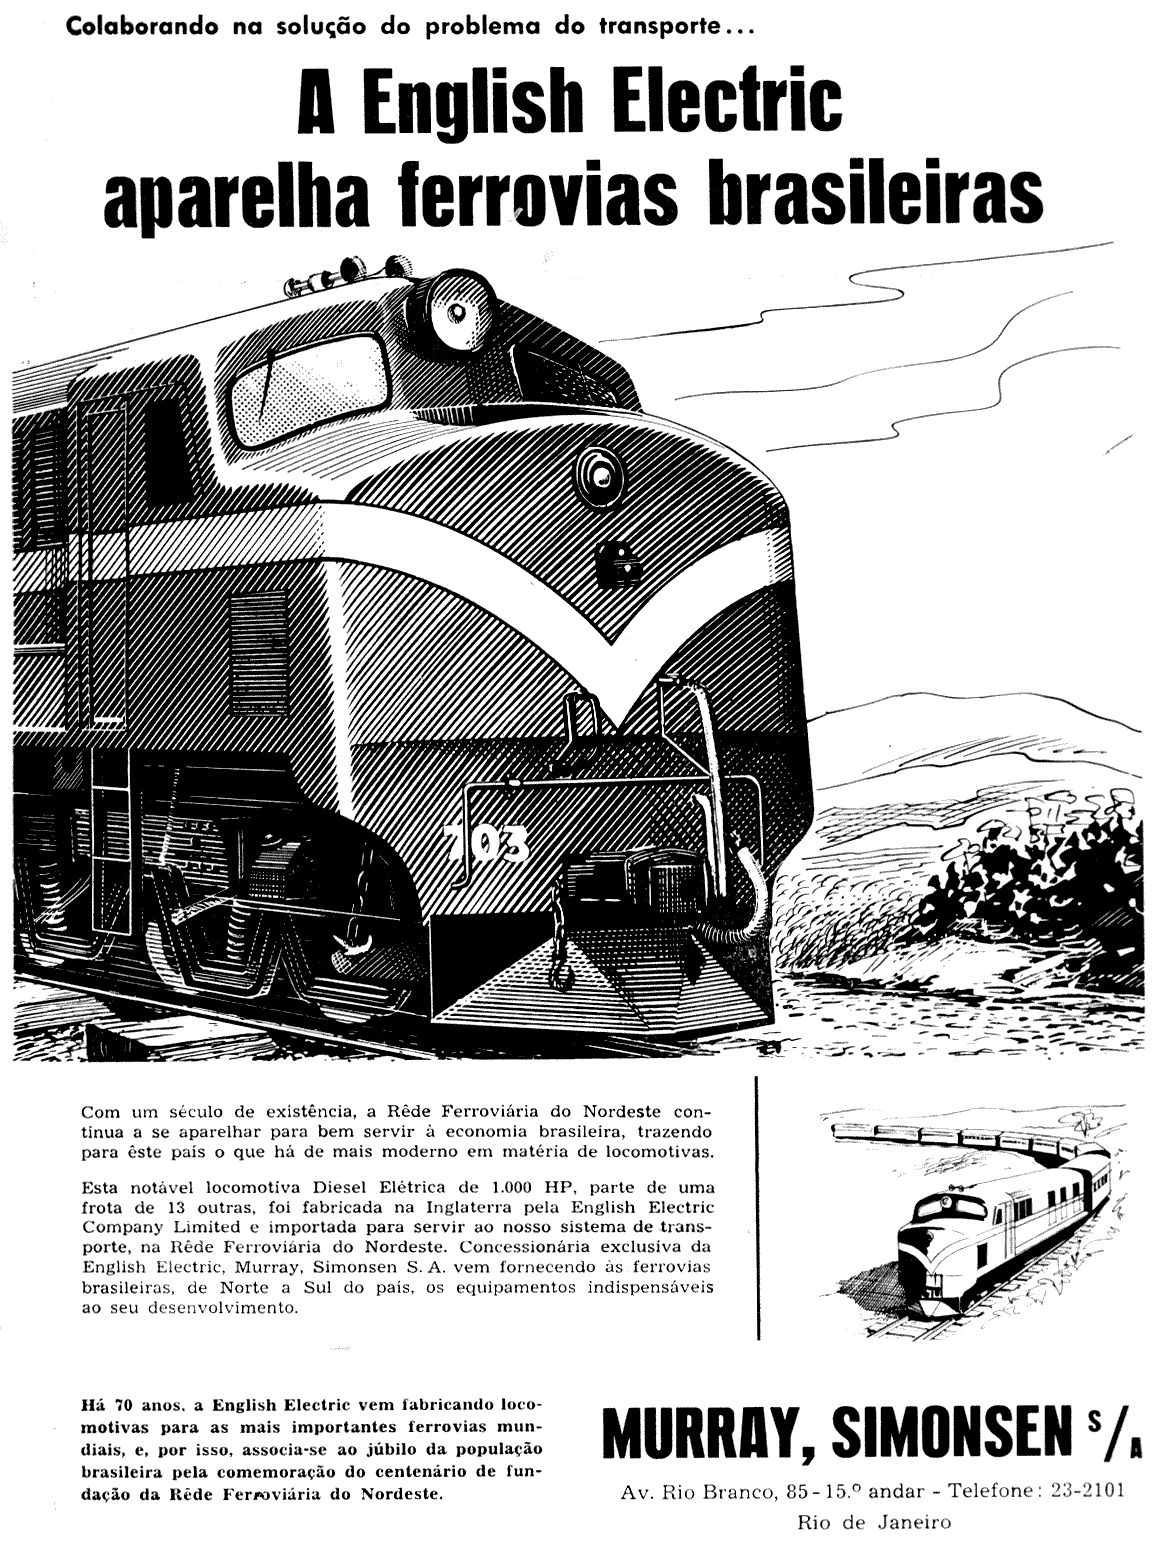 Locomotivas English Electric em anúncio de Murray, Simonsen S/A, representantes exclusivos no Brasil em 1958, "centenário da fundação da Rede Ferroviária do Nordeste"